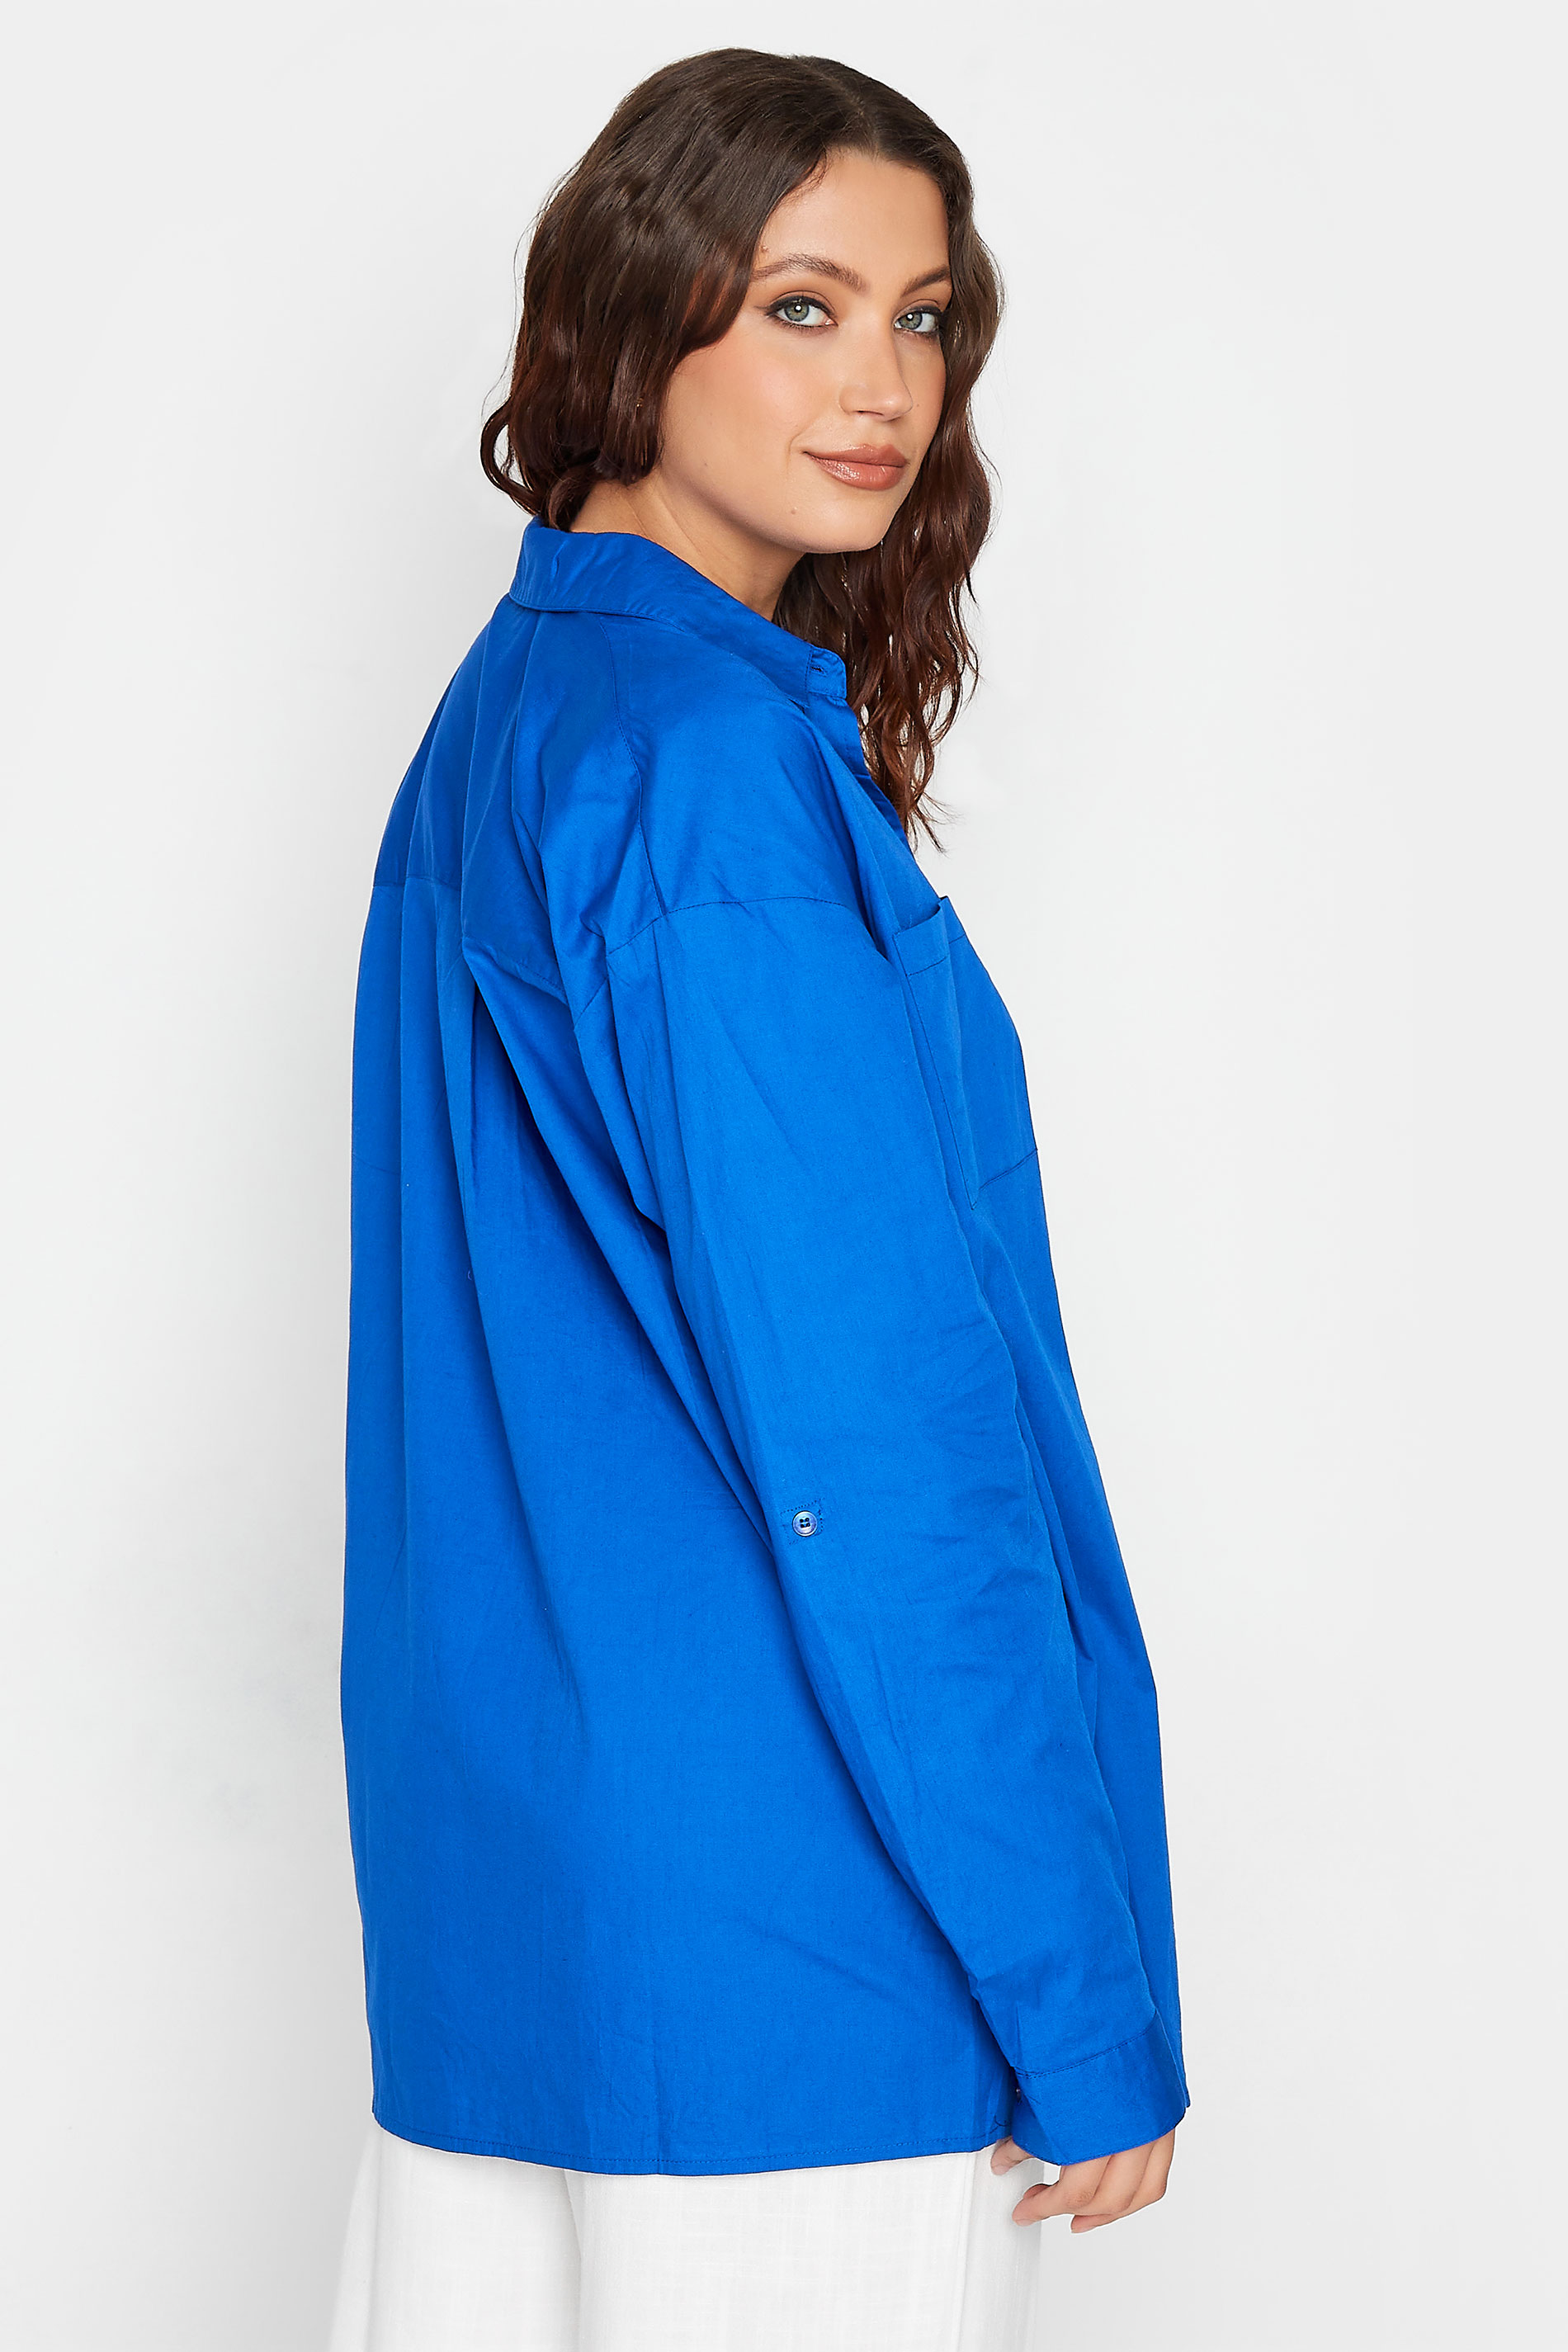 LTS Tall Women's Cobalt Blue Oversized Cotton Shirt | Long Tall Sally 3